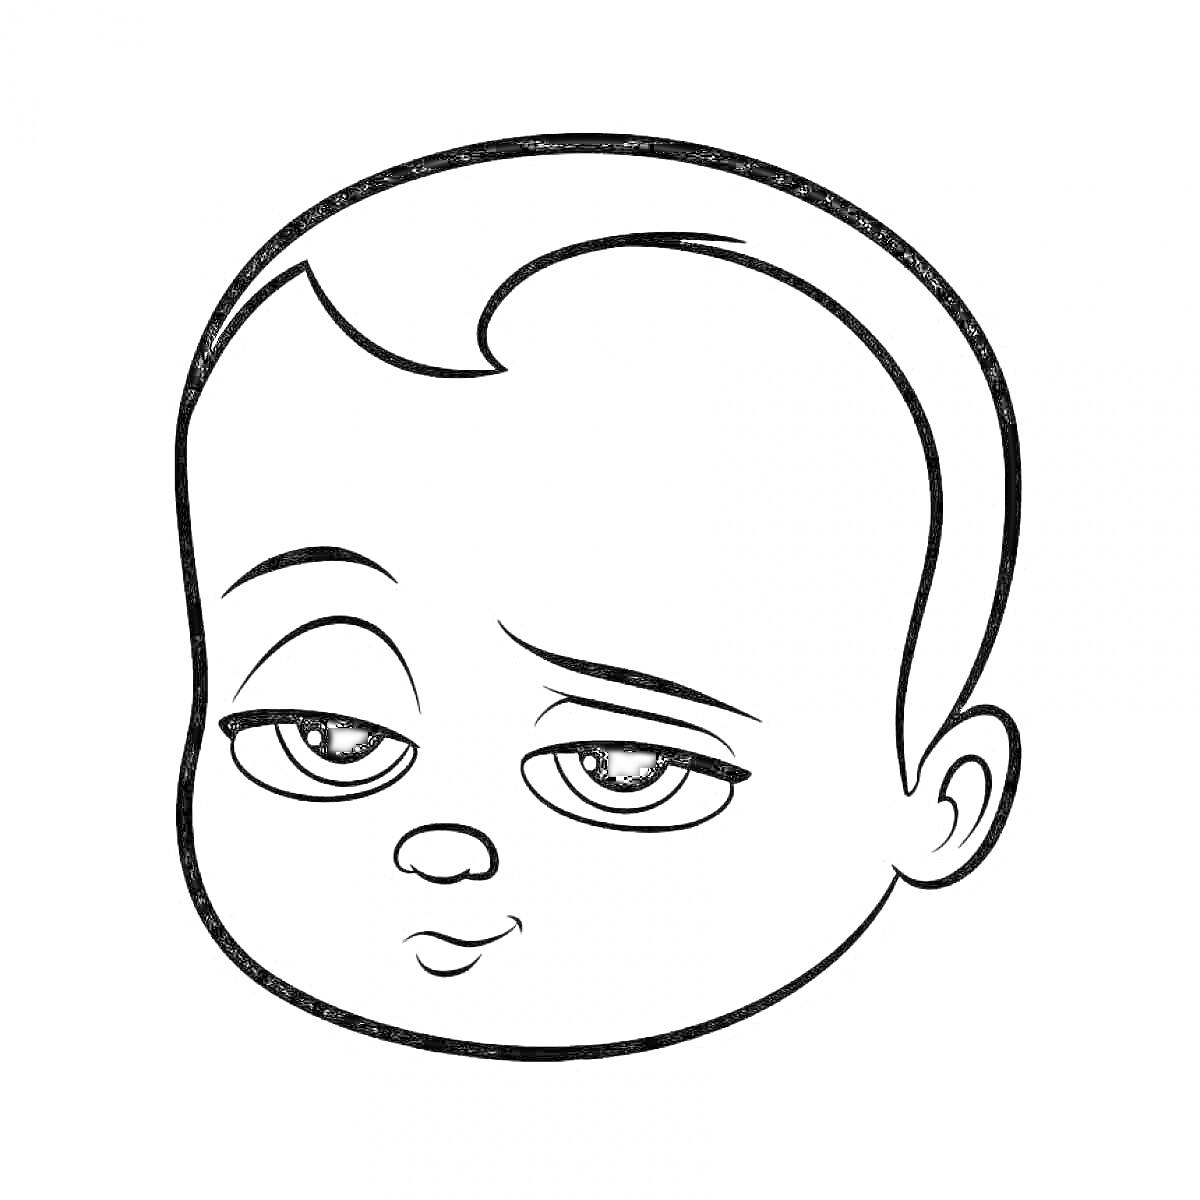 Раскраска Лицо младенца с выражением скептицизма, крупные глаза, немного приподнятая бровь, небольшой улыбающийся рот, полукруглые уши